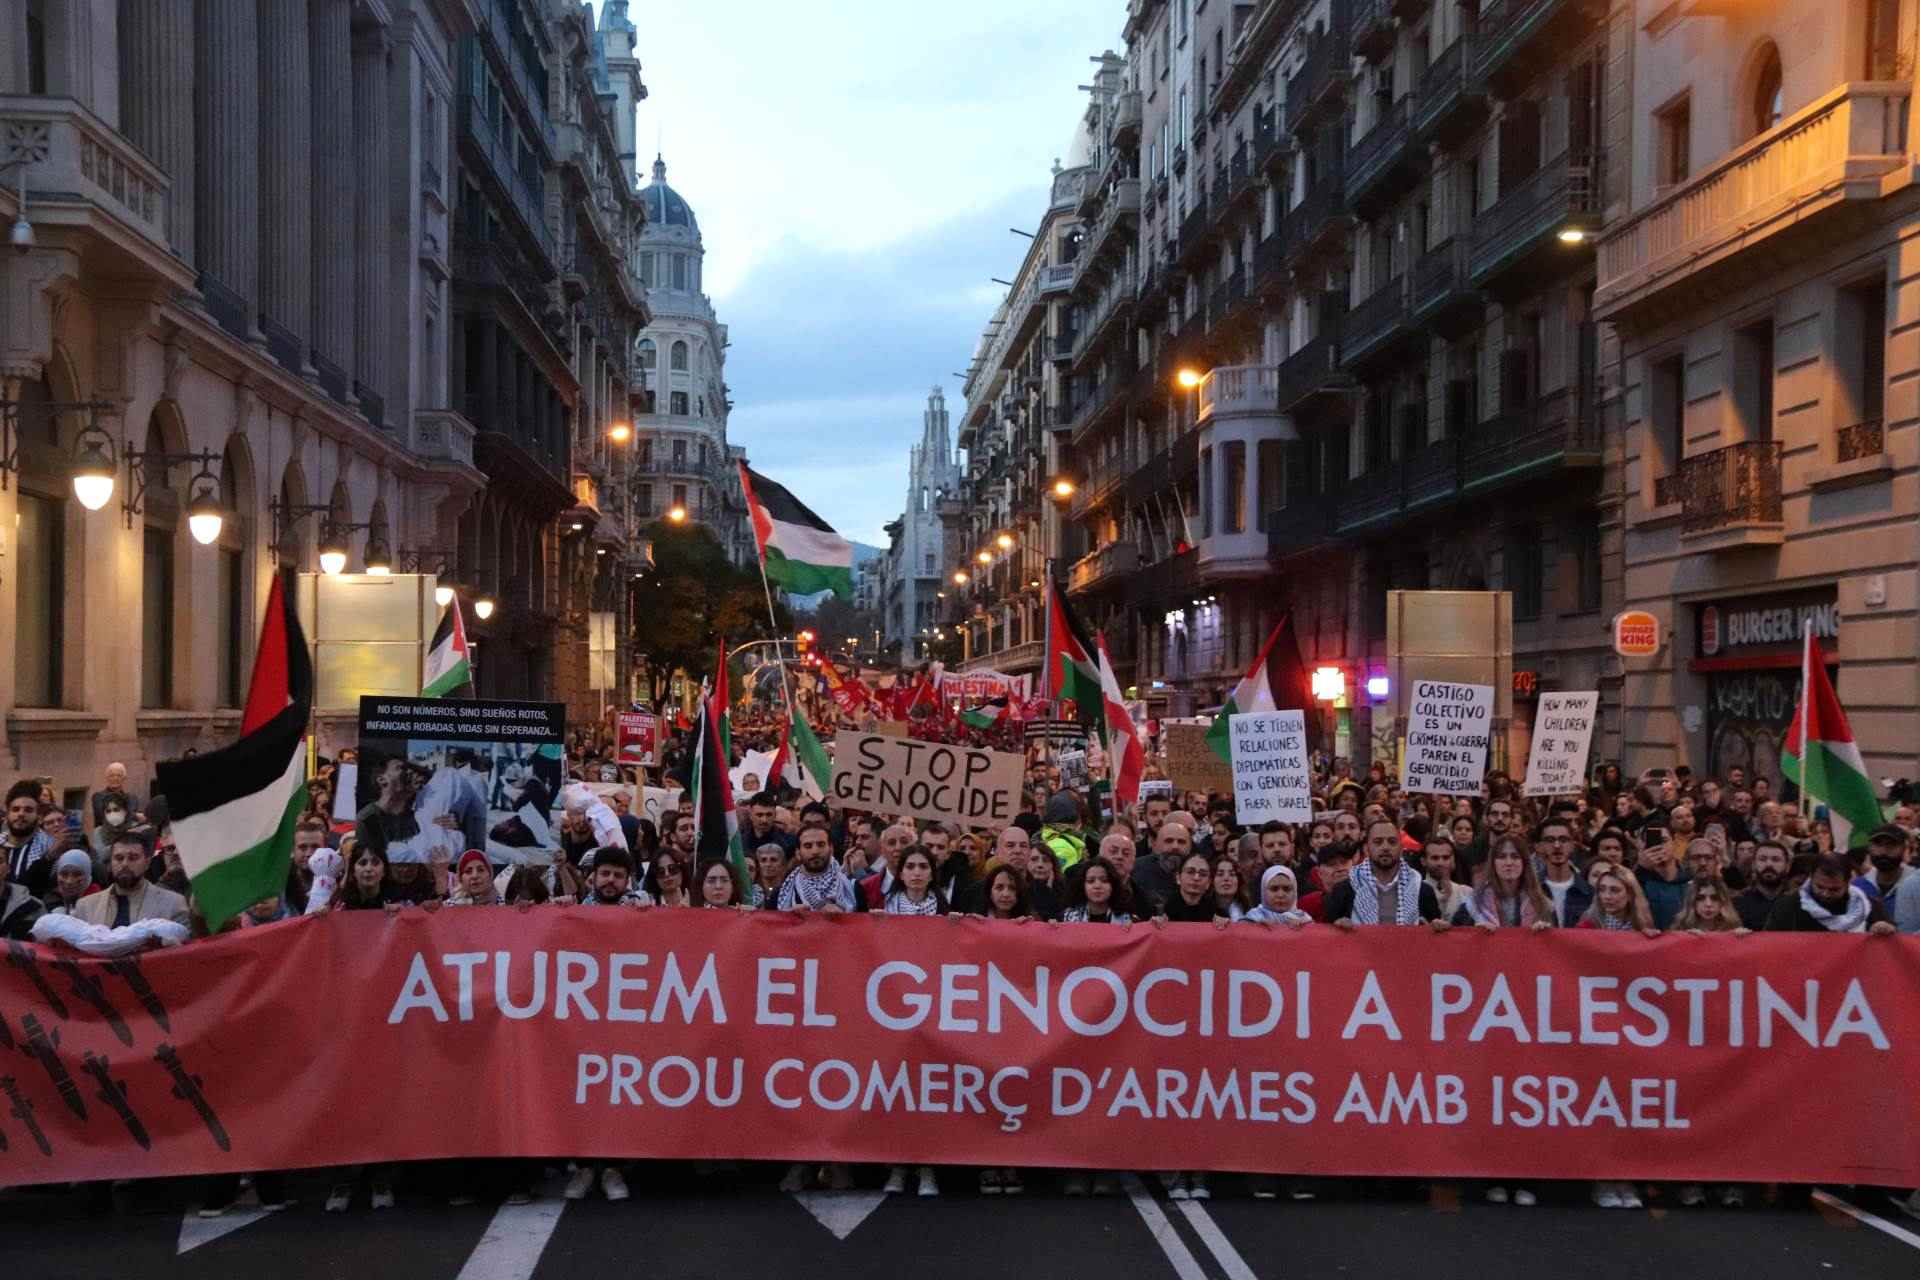 Nova manifestació a Barcelona per exigir un alto el foc a Gaza: "Israel assassina, Europa patrocina"